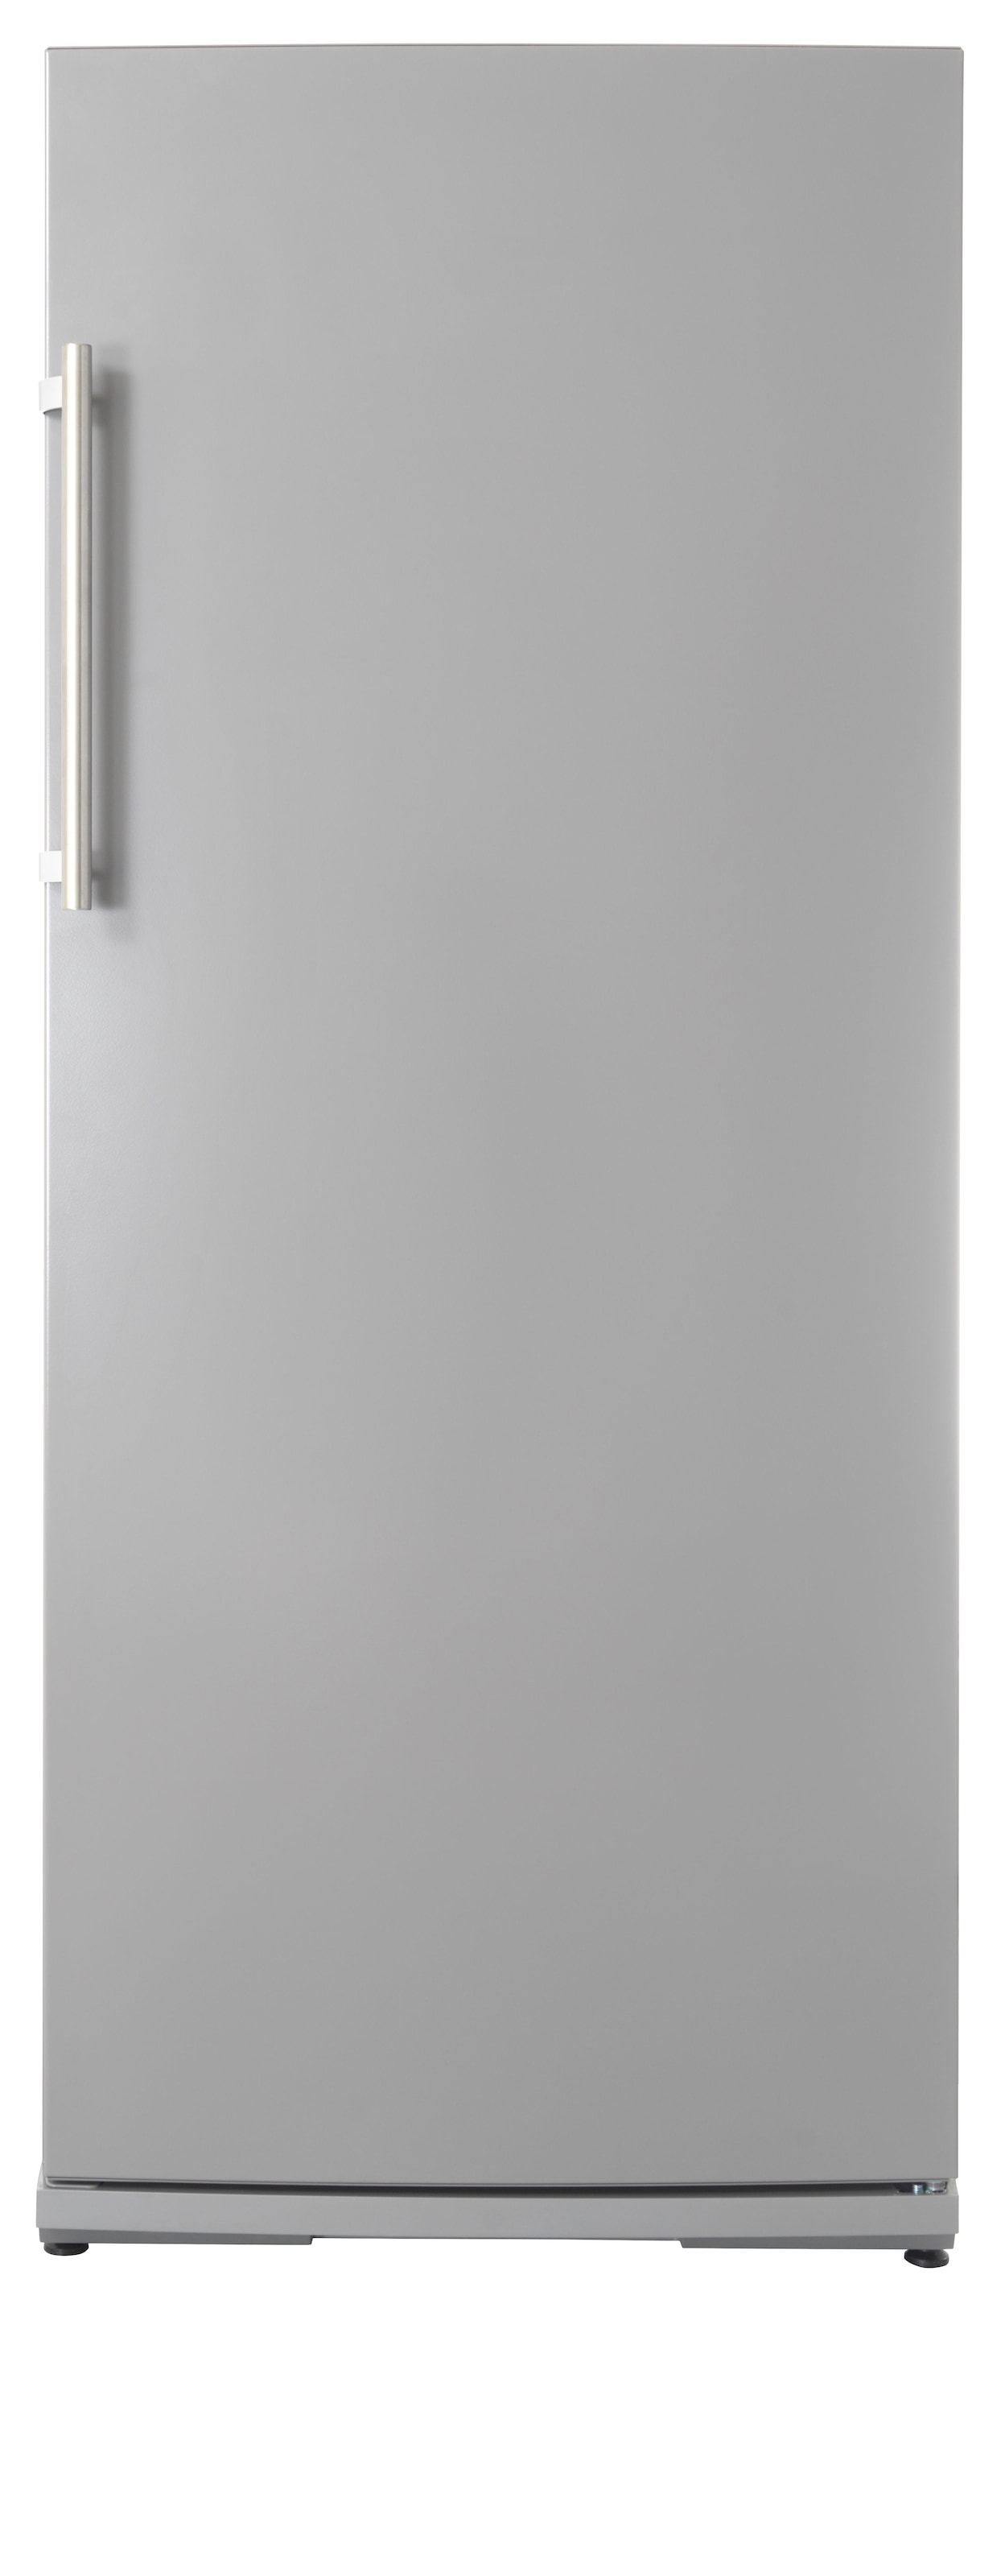 Getränkekühlschrank, FK 2540, 145 cm hoch, 60 cm breit